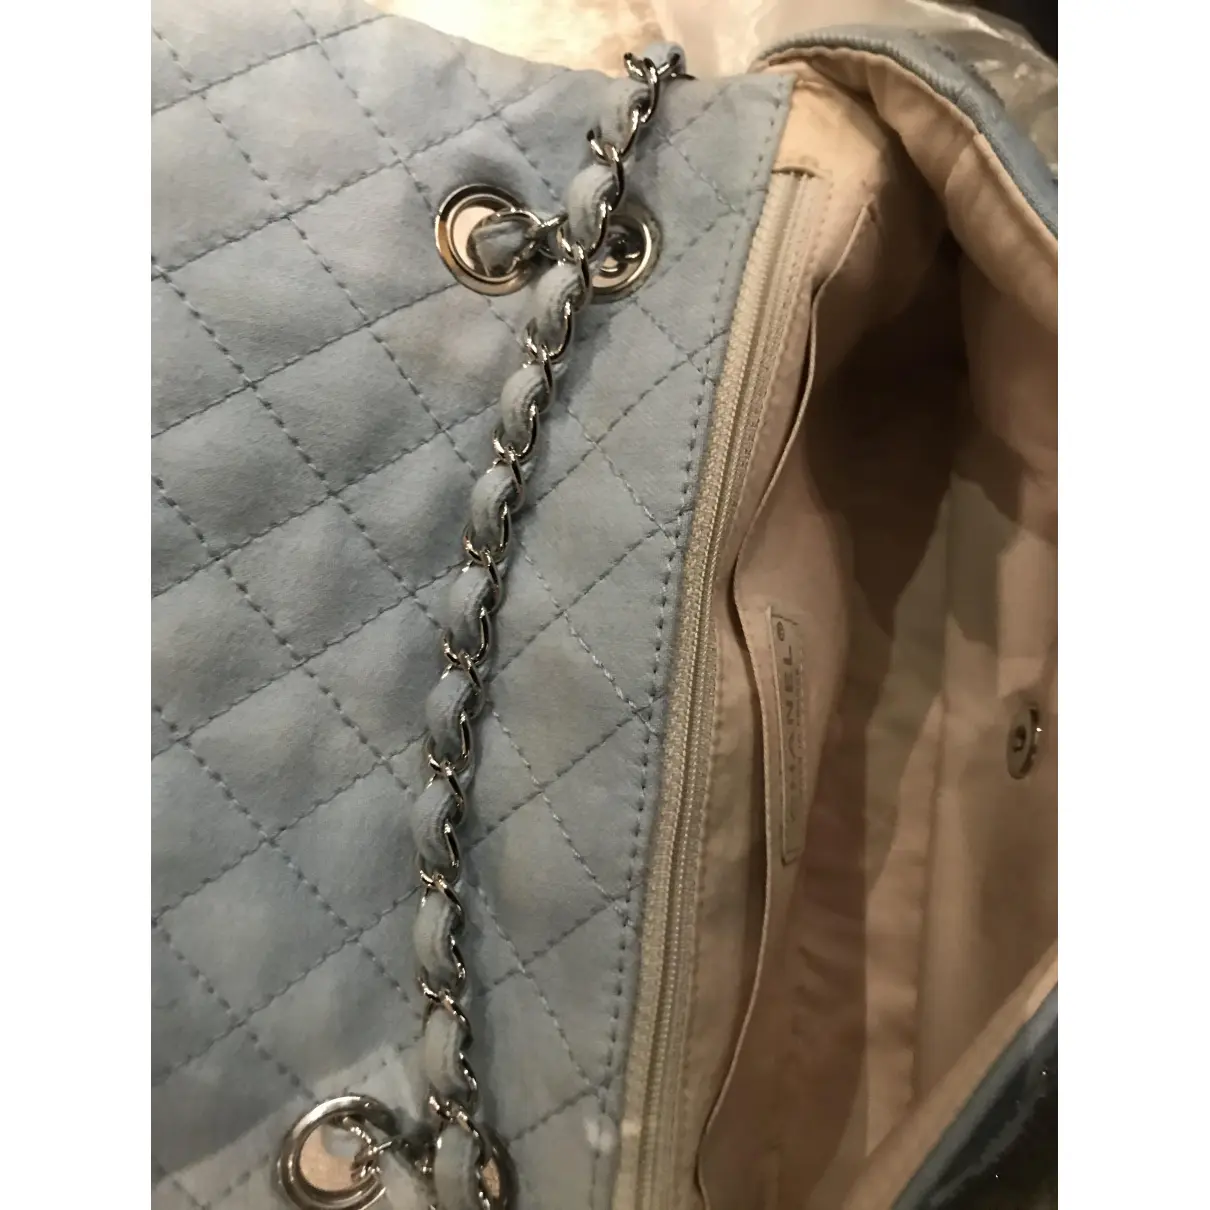 Timeless/Classique handbag Chanel